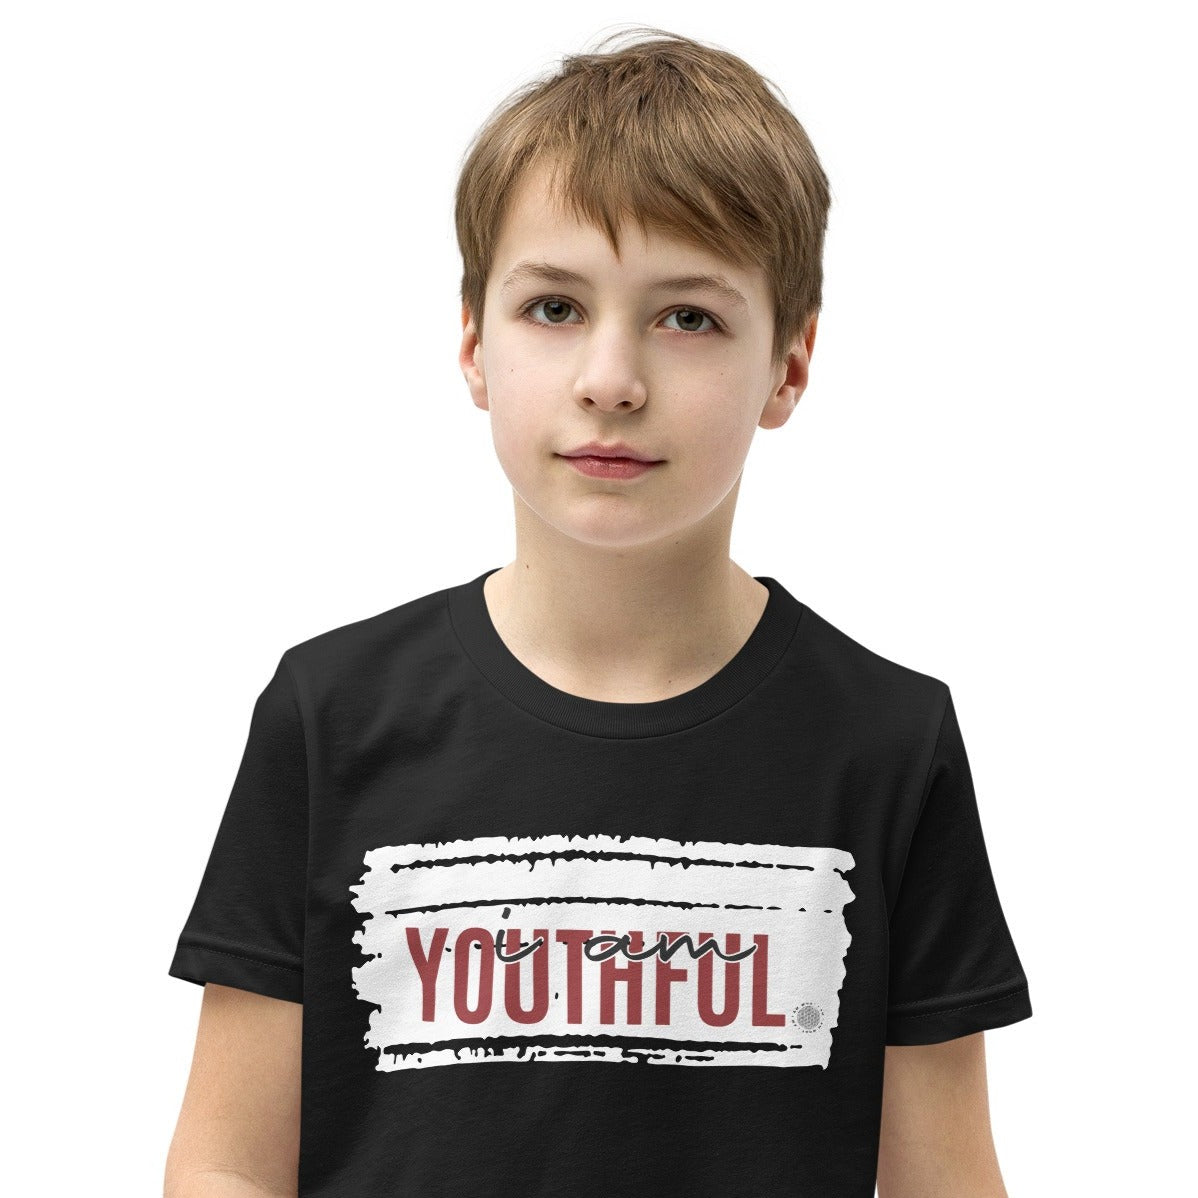 I Am Youthful Youth T-Shirt black